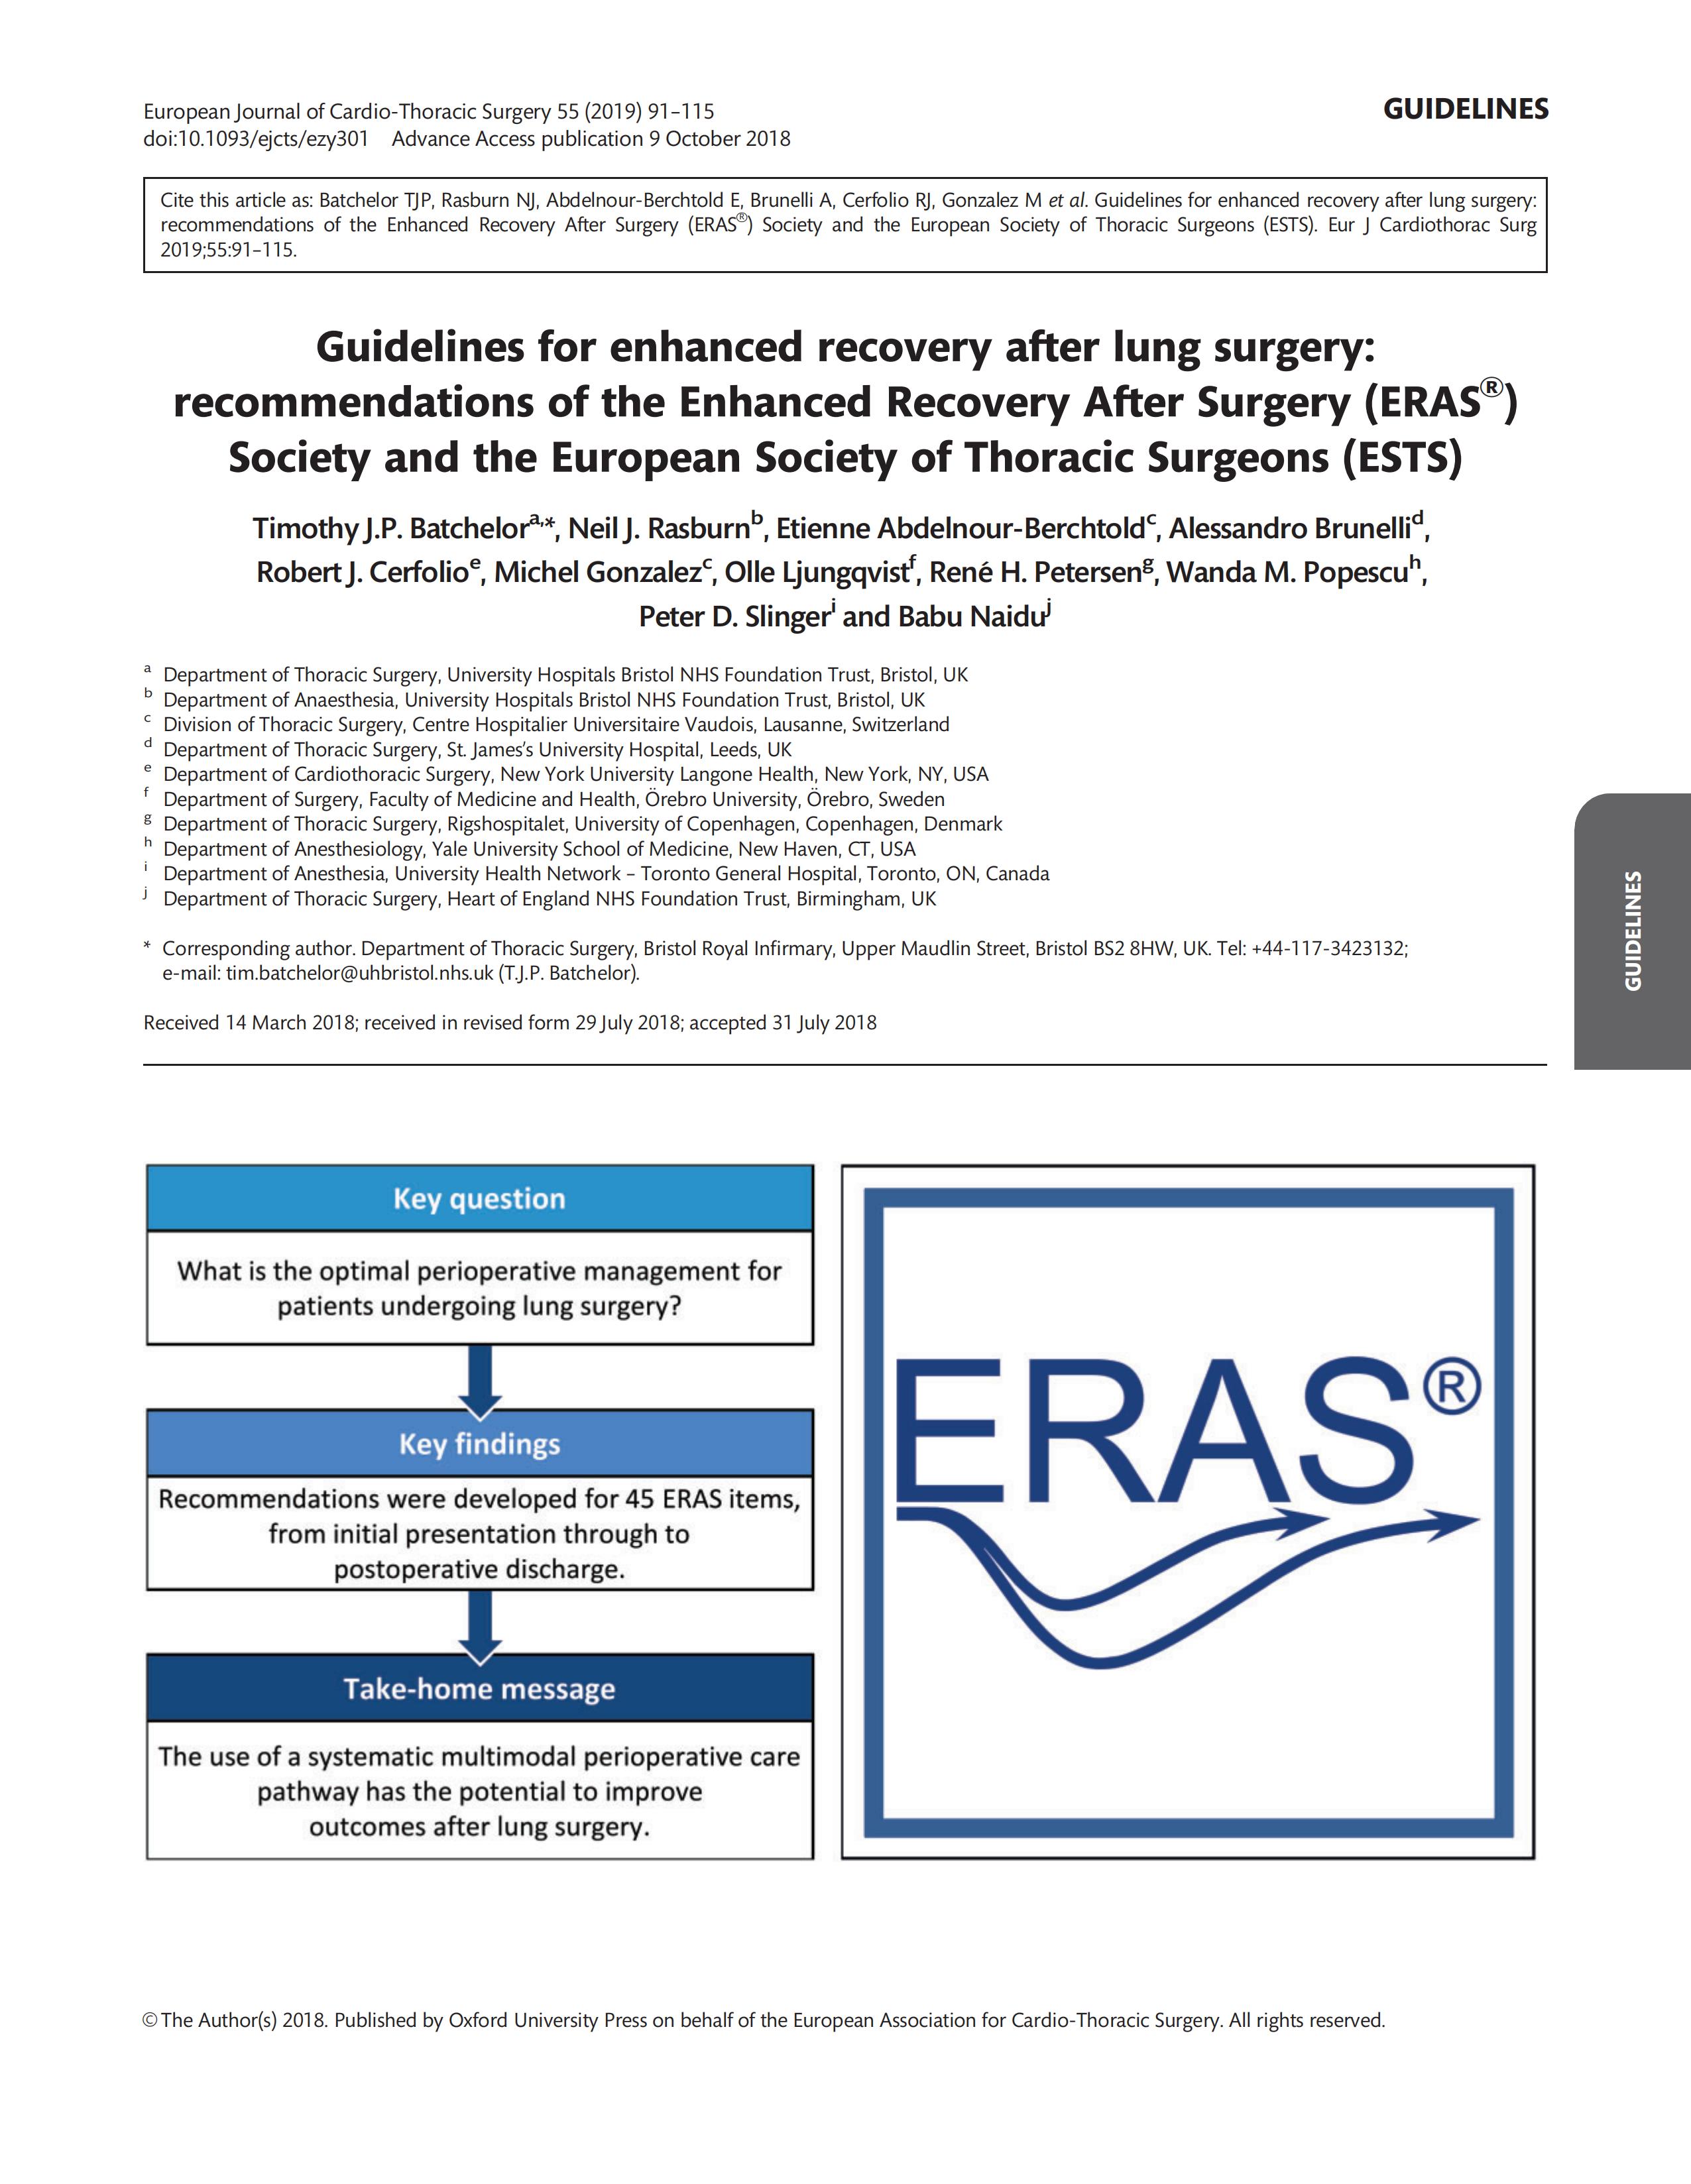 肺部手术后加速康复指南：加速康复外科 (ERAS ® ) 协会和欧洲胸外科医师协会 (ESTS) 的建议_00.jpg